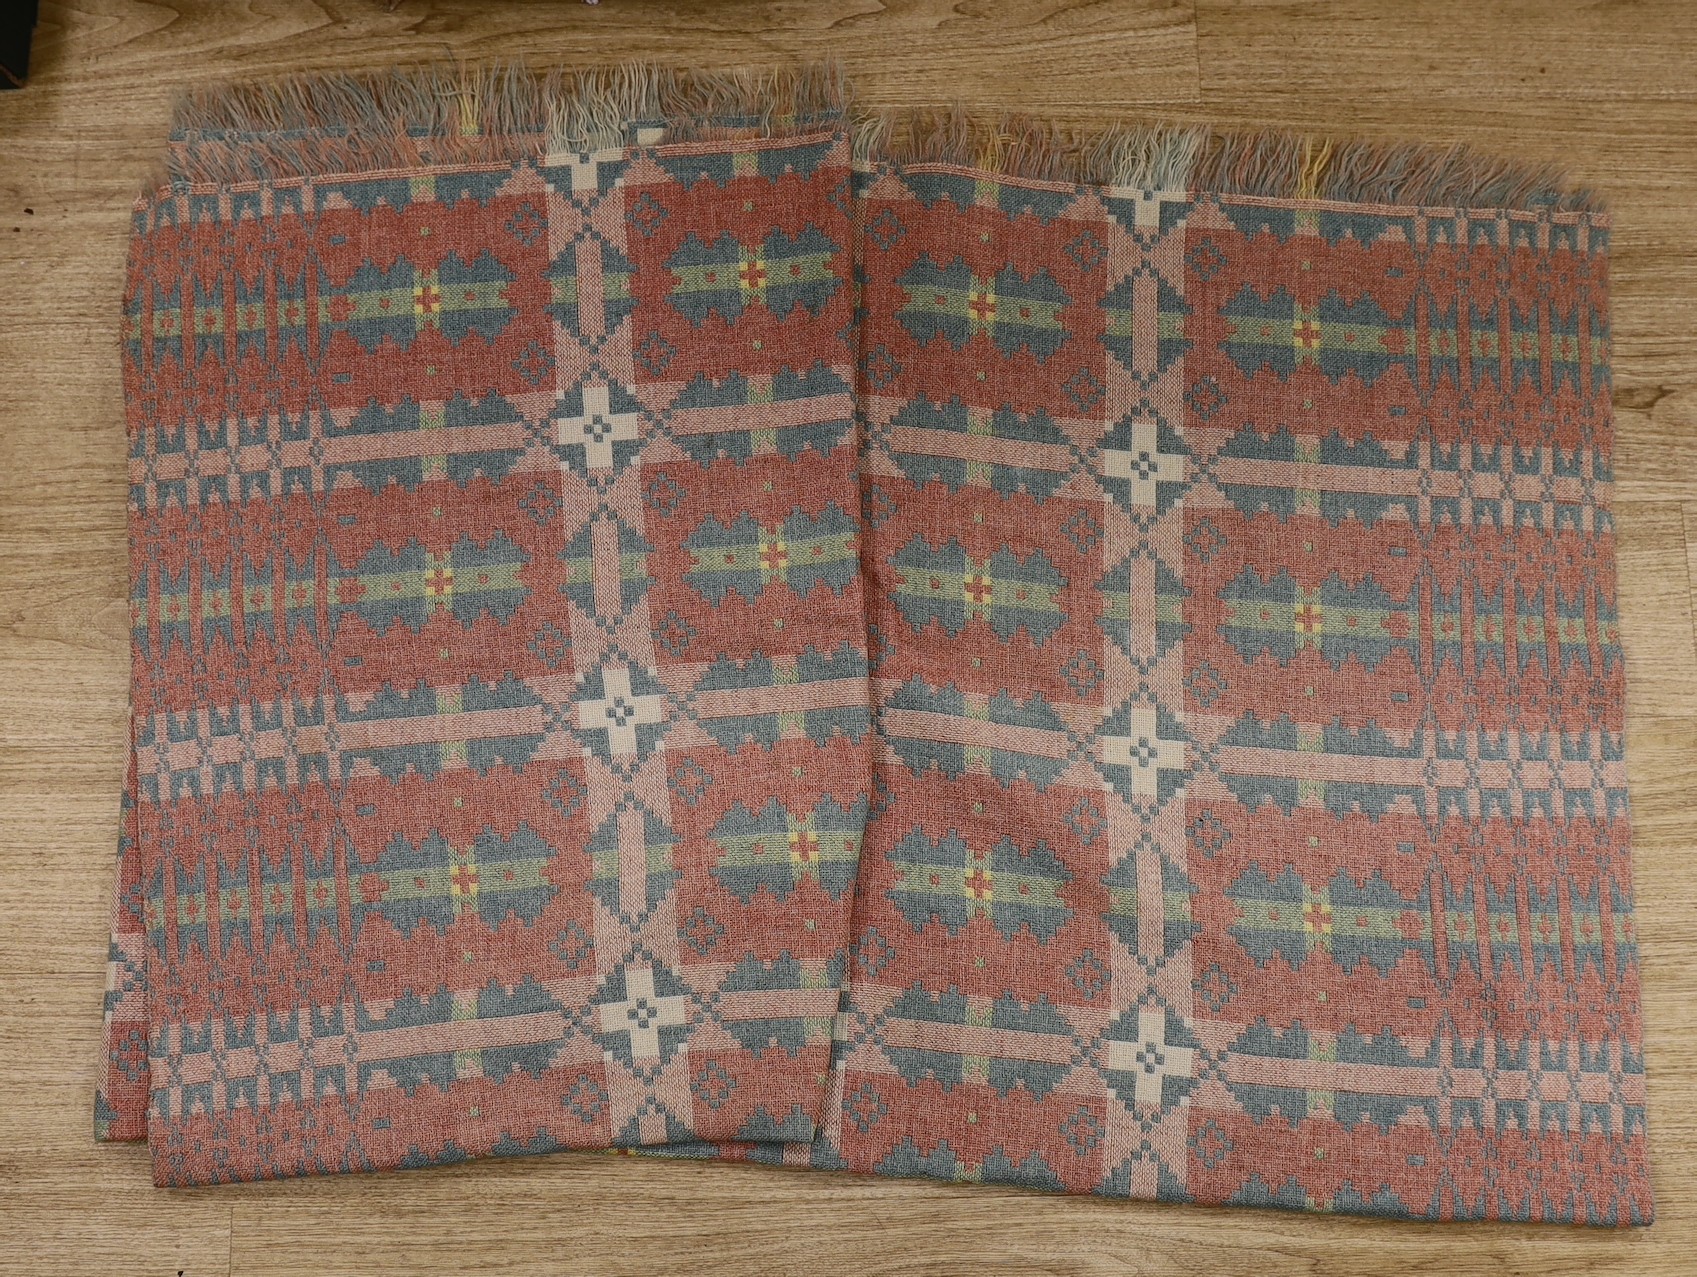 A pair of Welsh woollen blankets